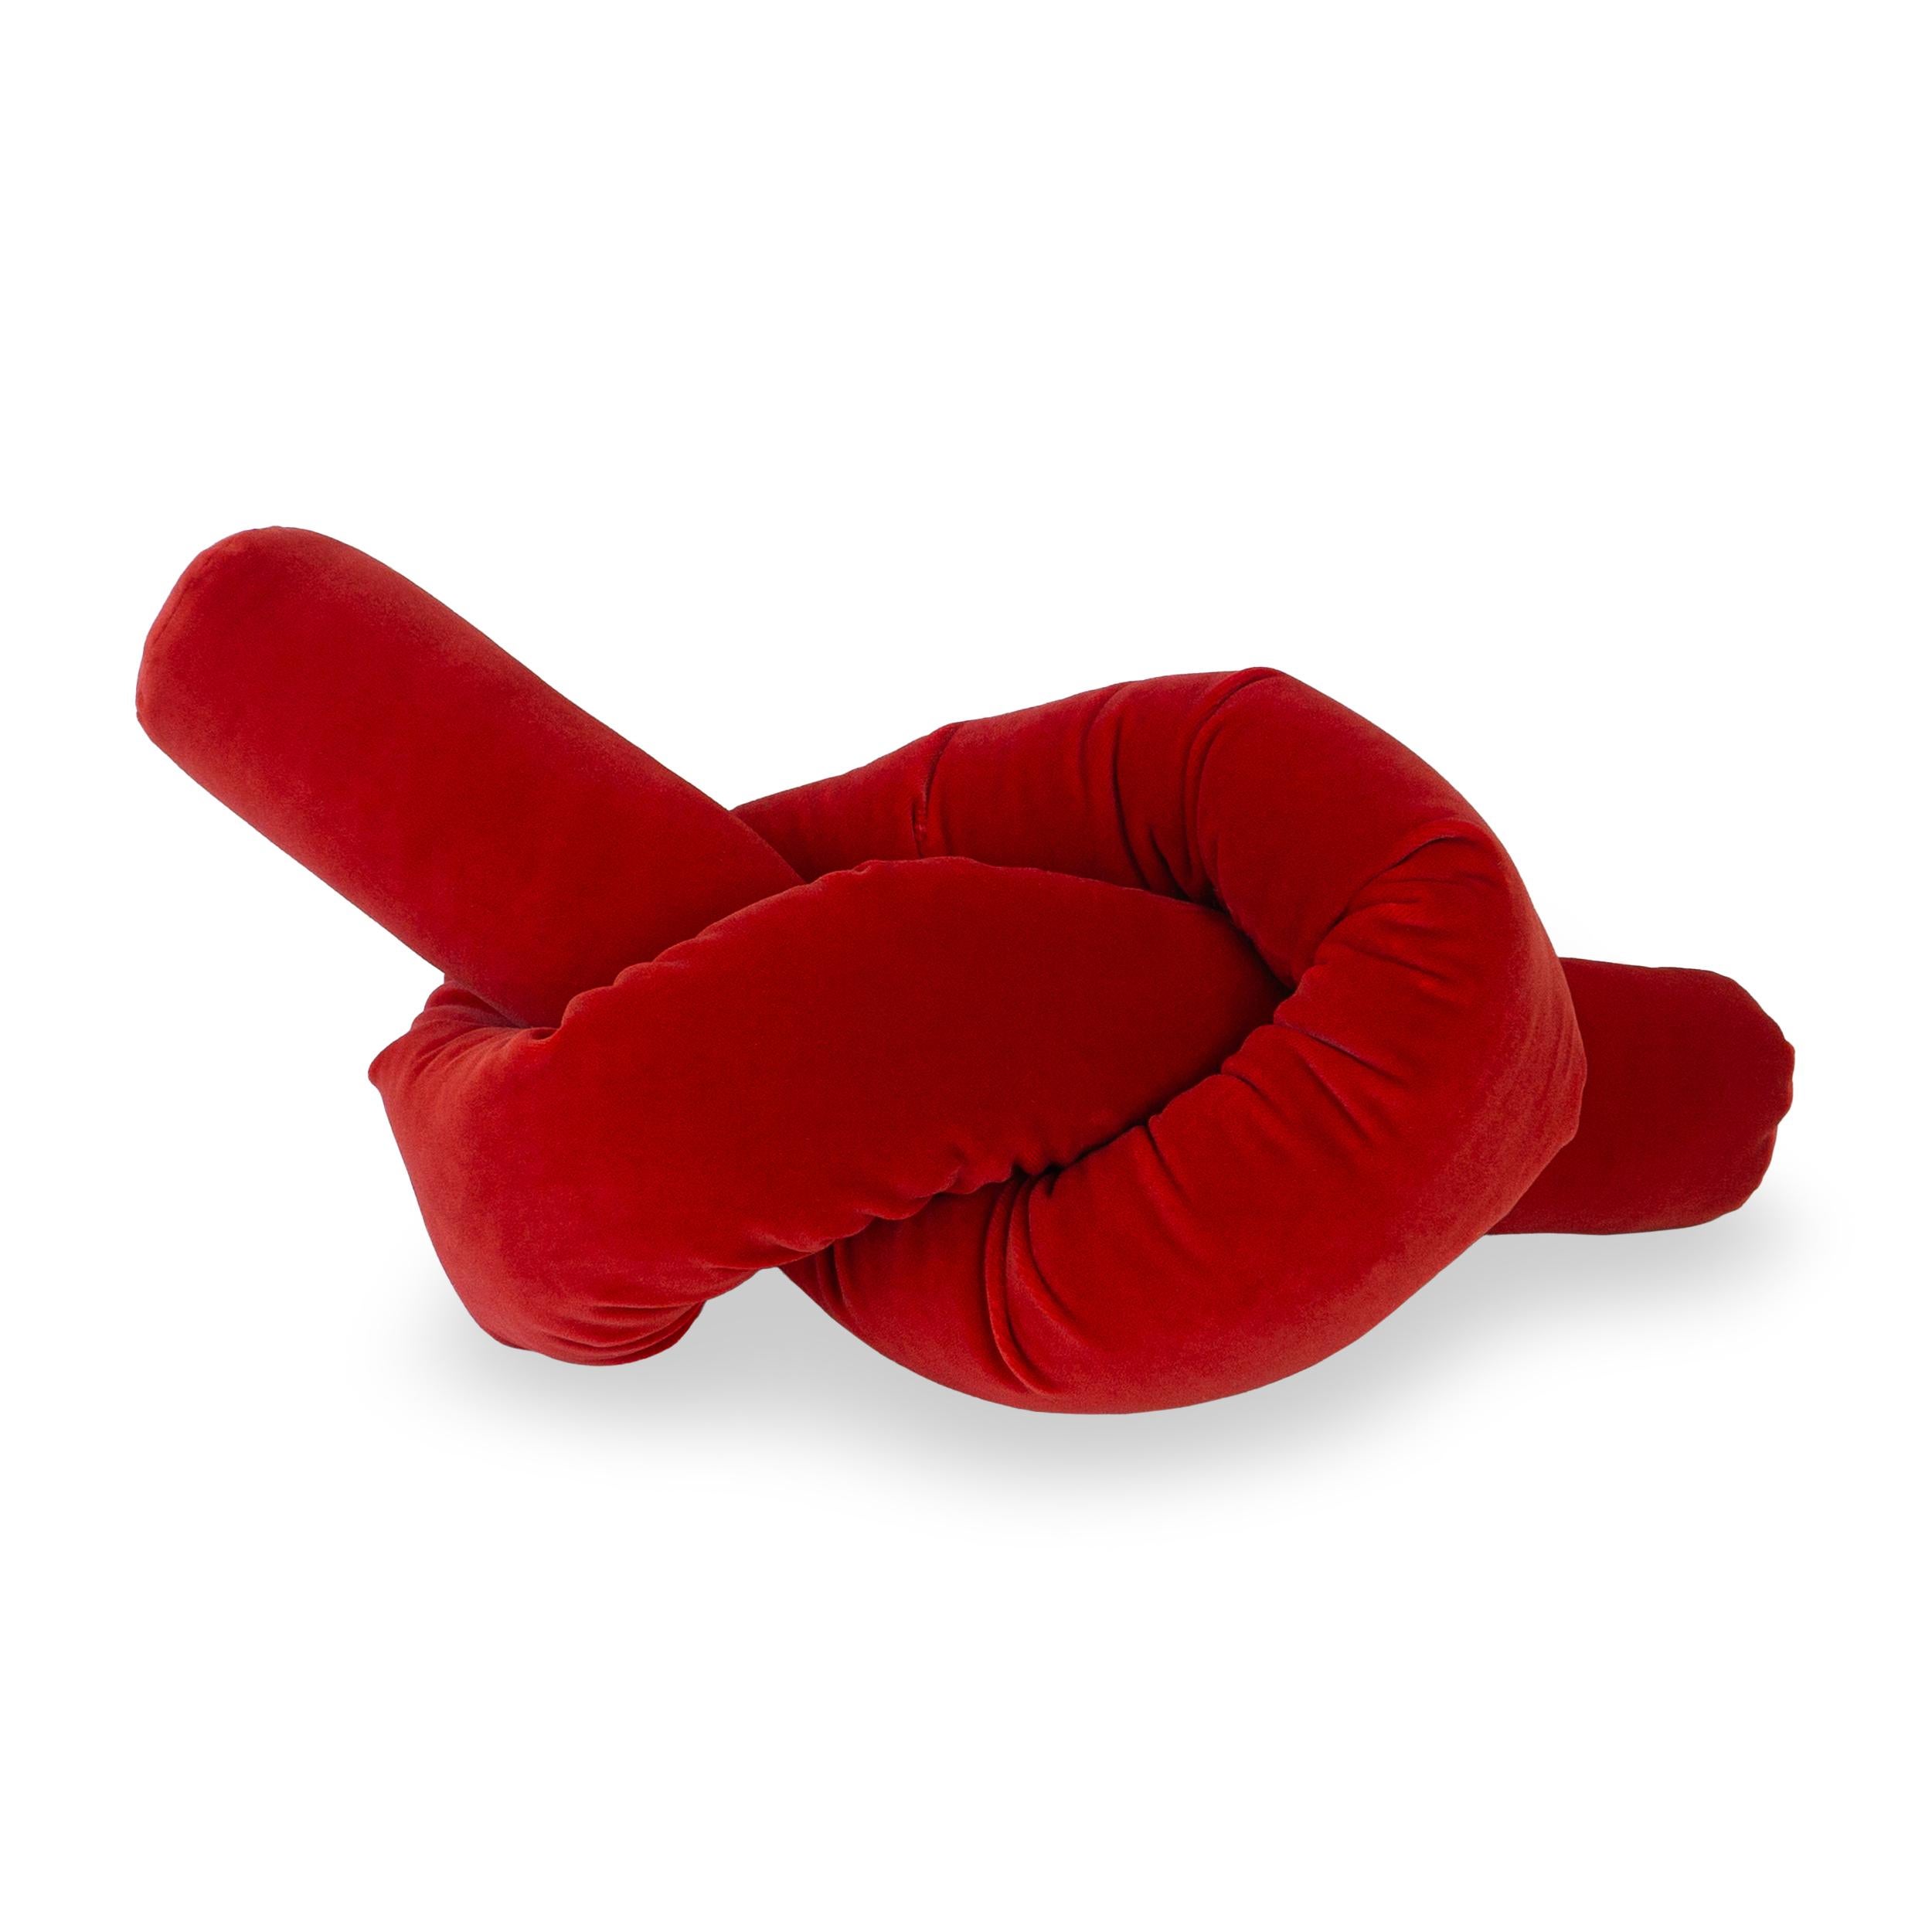 Audacieux et amusant, le coussin en forme de nœud de bretzel rouge écarlate est un accent décoratif moderne pour tout espace de vie. Fabriqué en velours pelucheux, ce coussin à nœuds moderne arbore une teinte rouge vibrante et une forme de bretzel